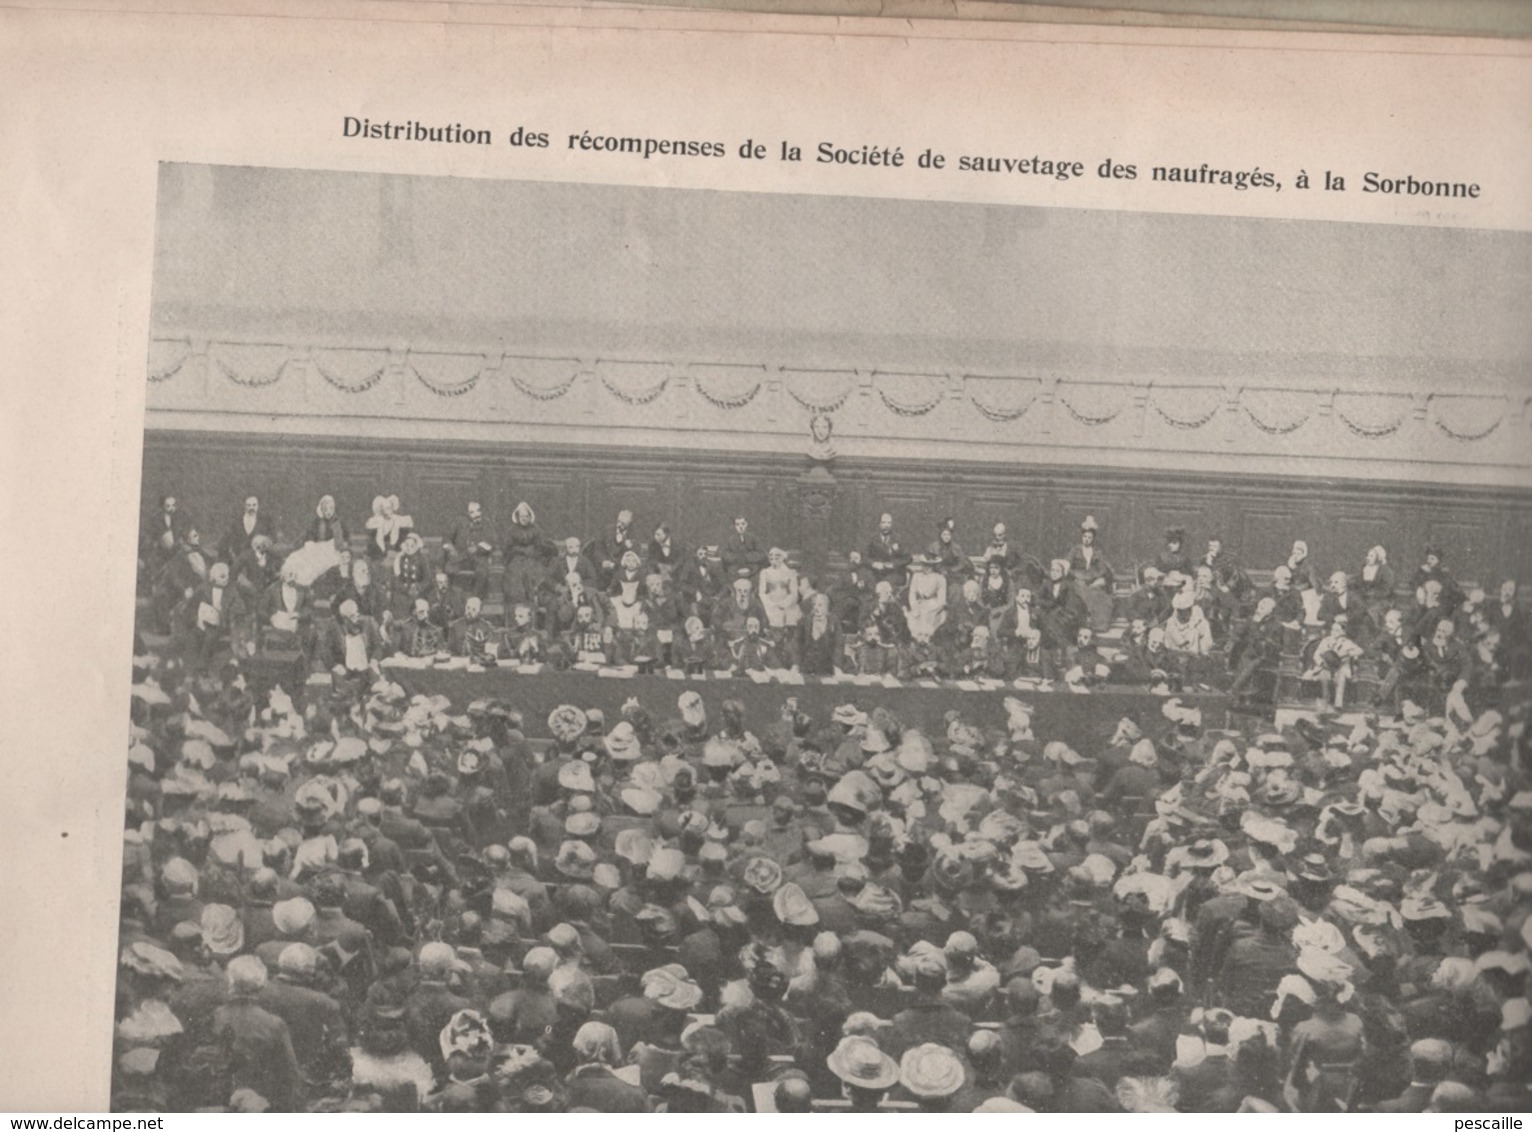 LA VIE ILLUSTREE 24 05 1901 - CYCLISME COURSE JACQUELIN/MAJOR TAYLOR - REVUE VINCENNES - INDE PENDJAB UMRITZAR